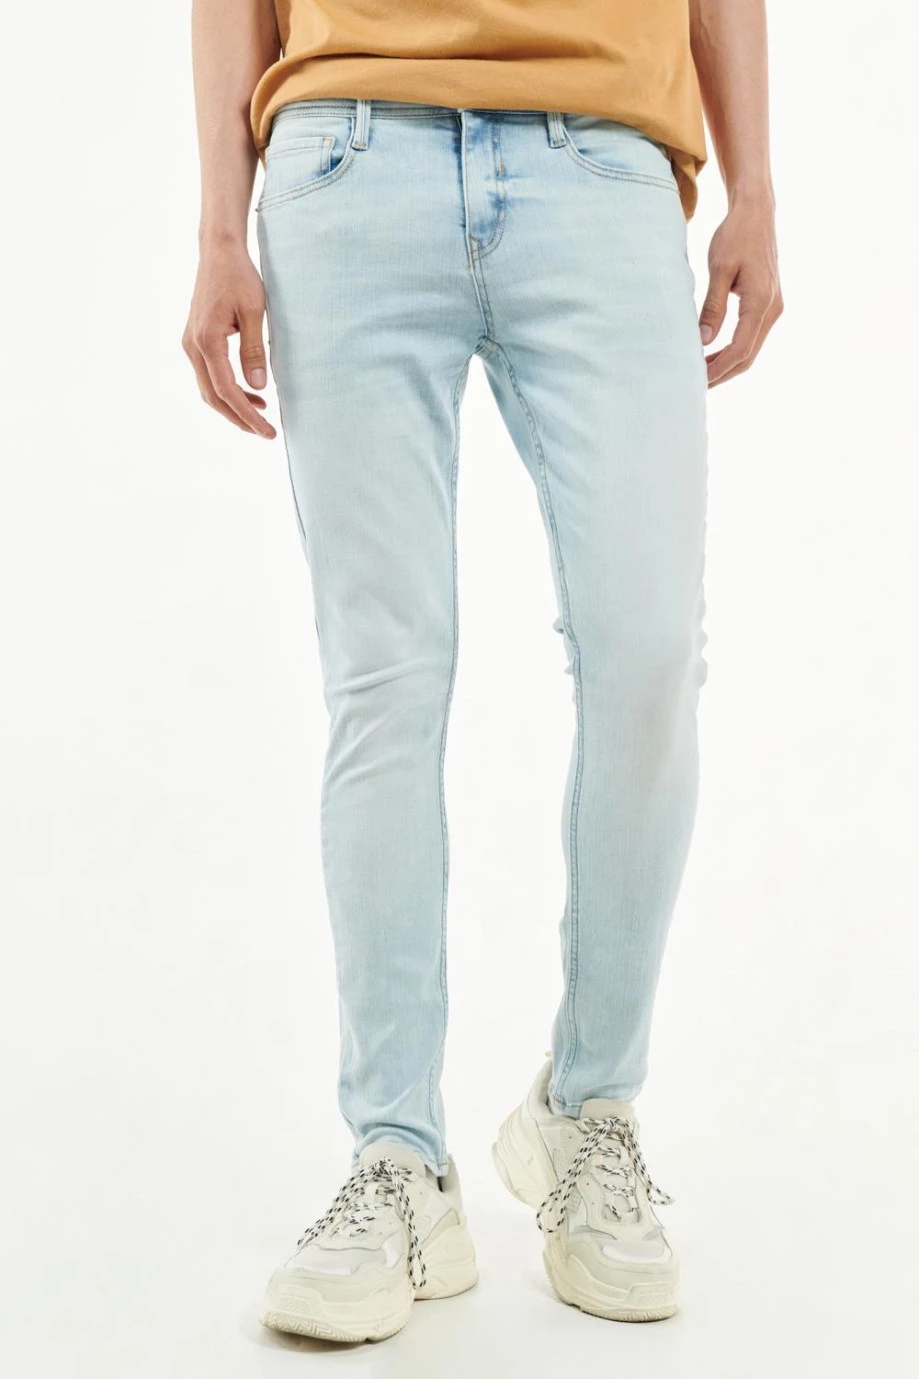 Jean súper skinny azul claro con ajuste ceñido y bolsillos